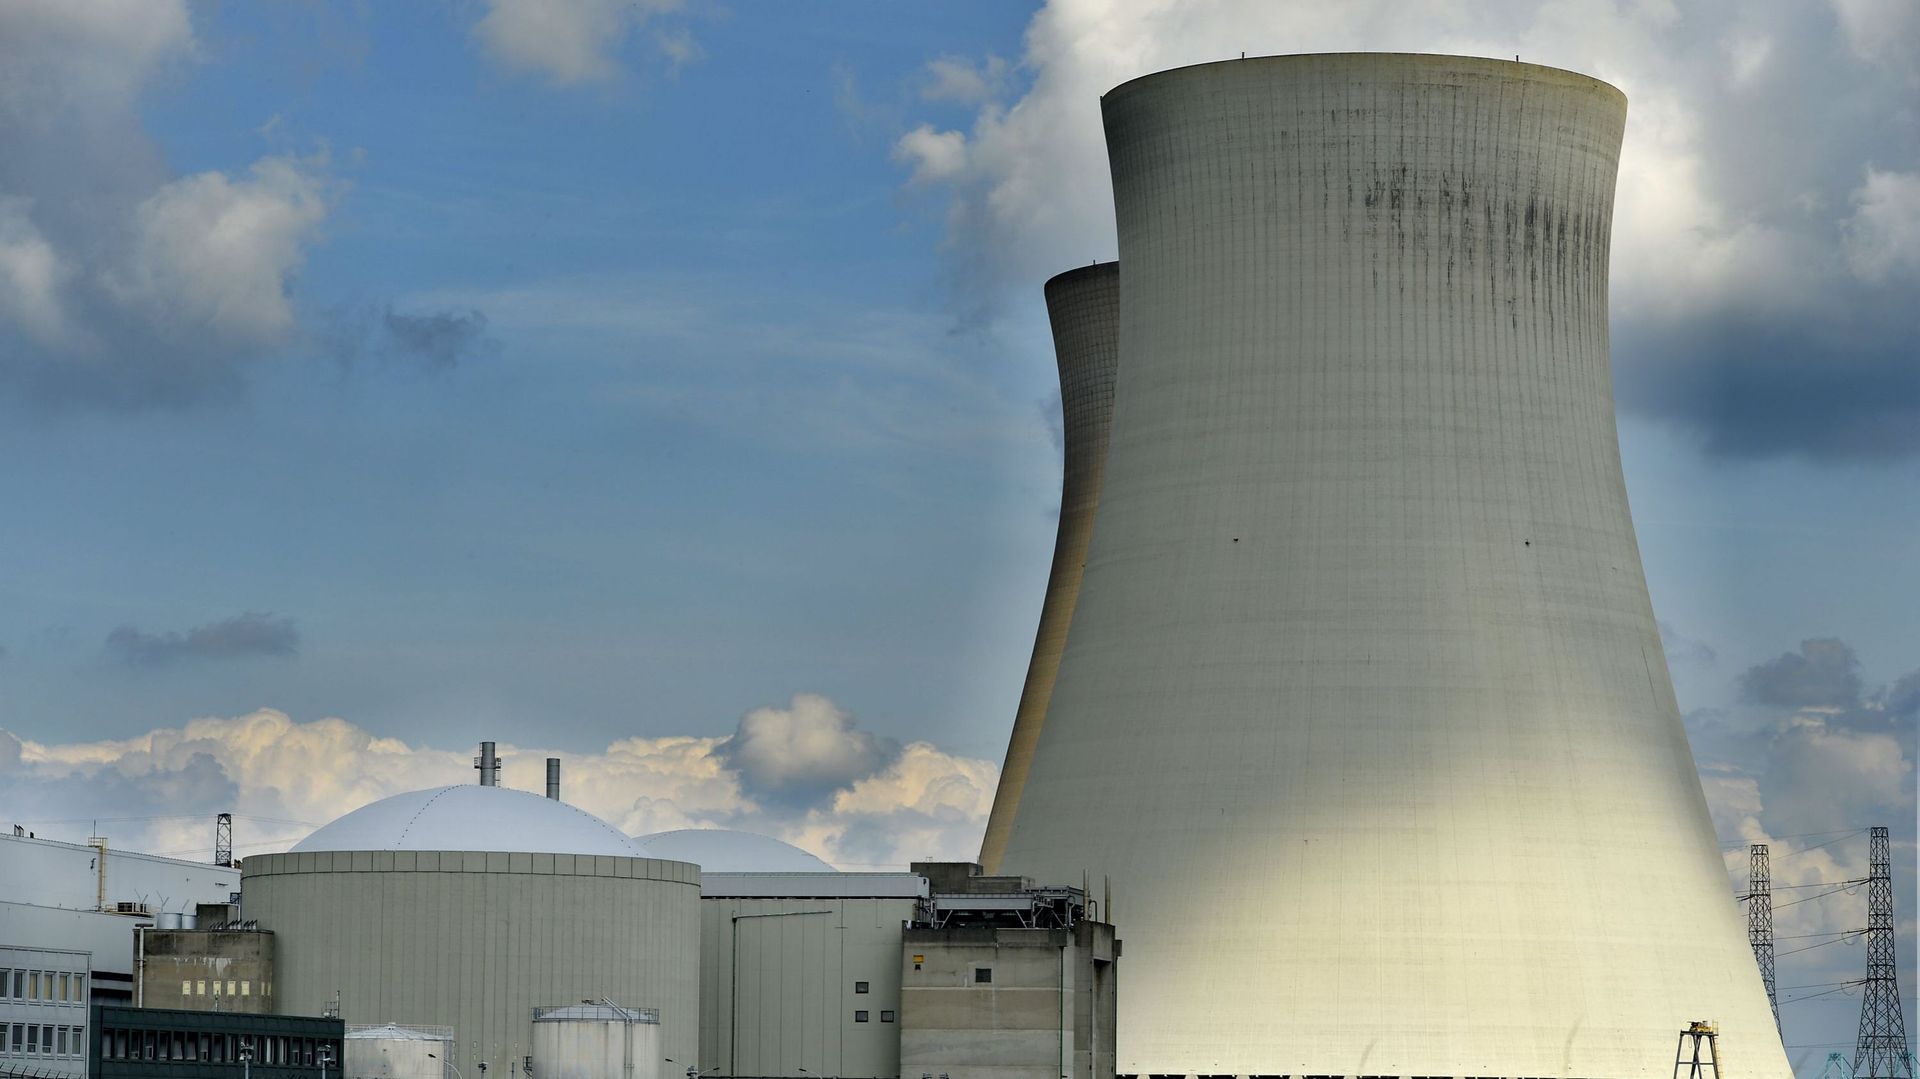 Les réacteurs nucléaires Doel 3 et Tihange 2 ont été mis à l'arrêt fin mars 2014.